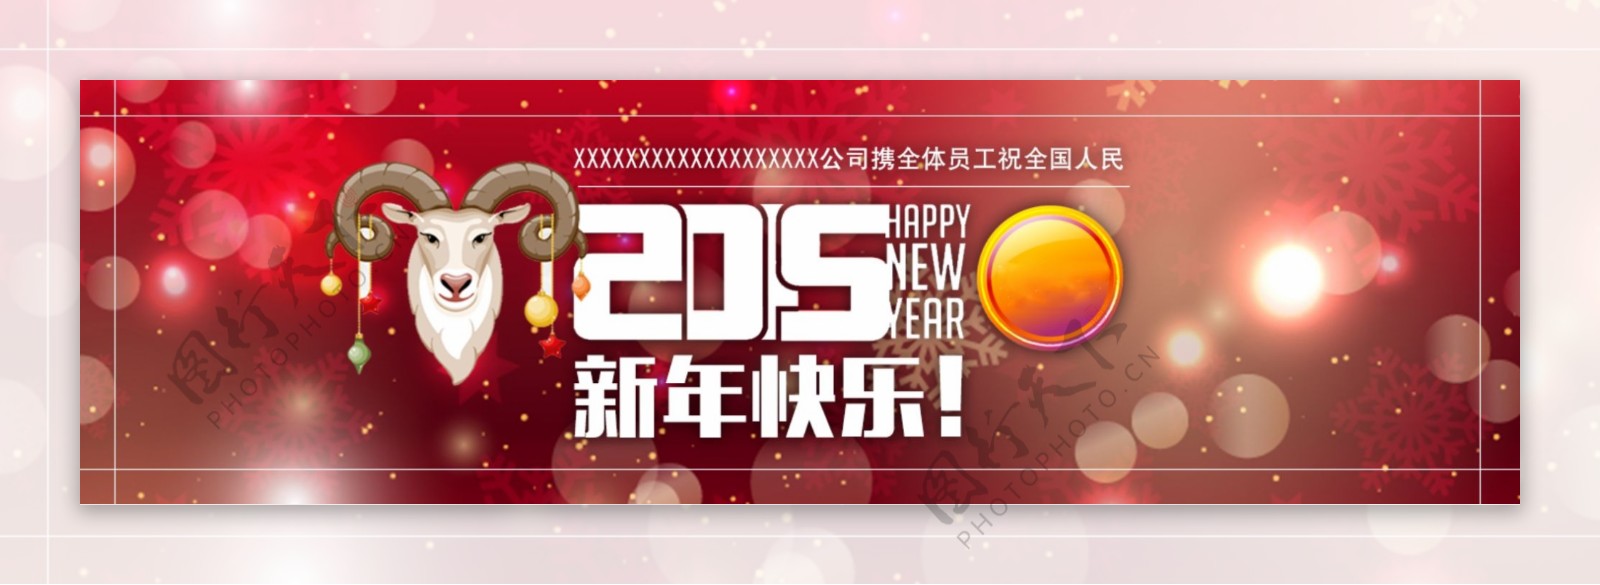 2015新年快乐公司banner图